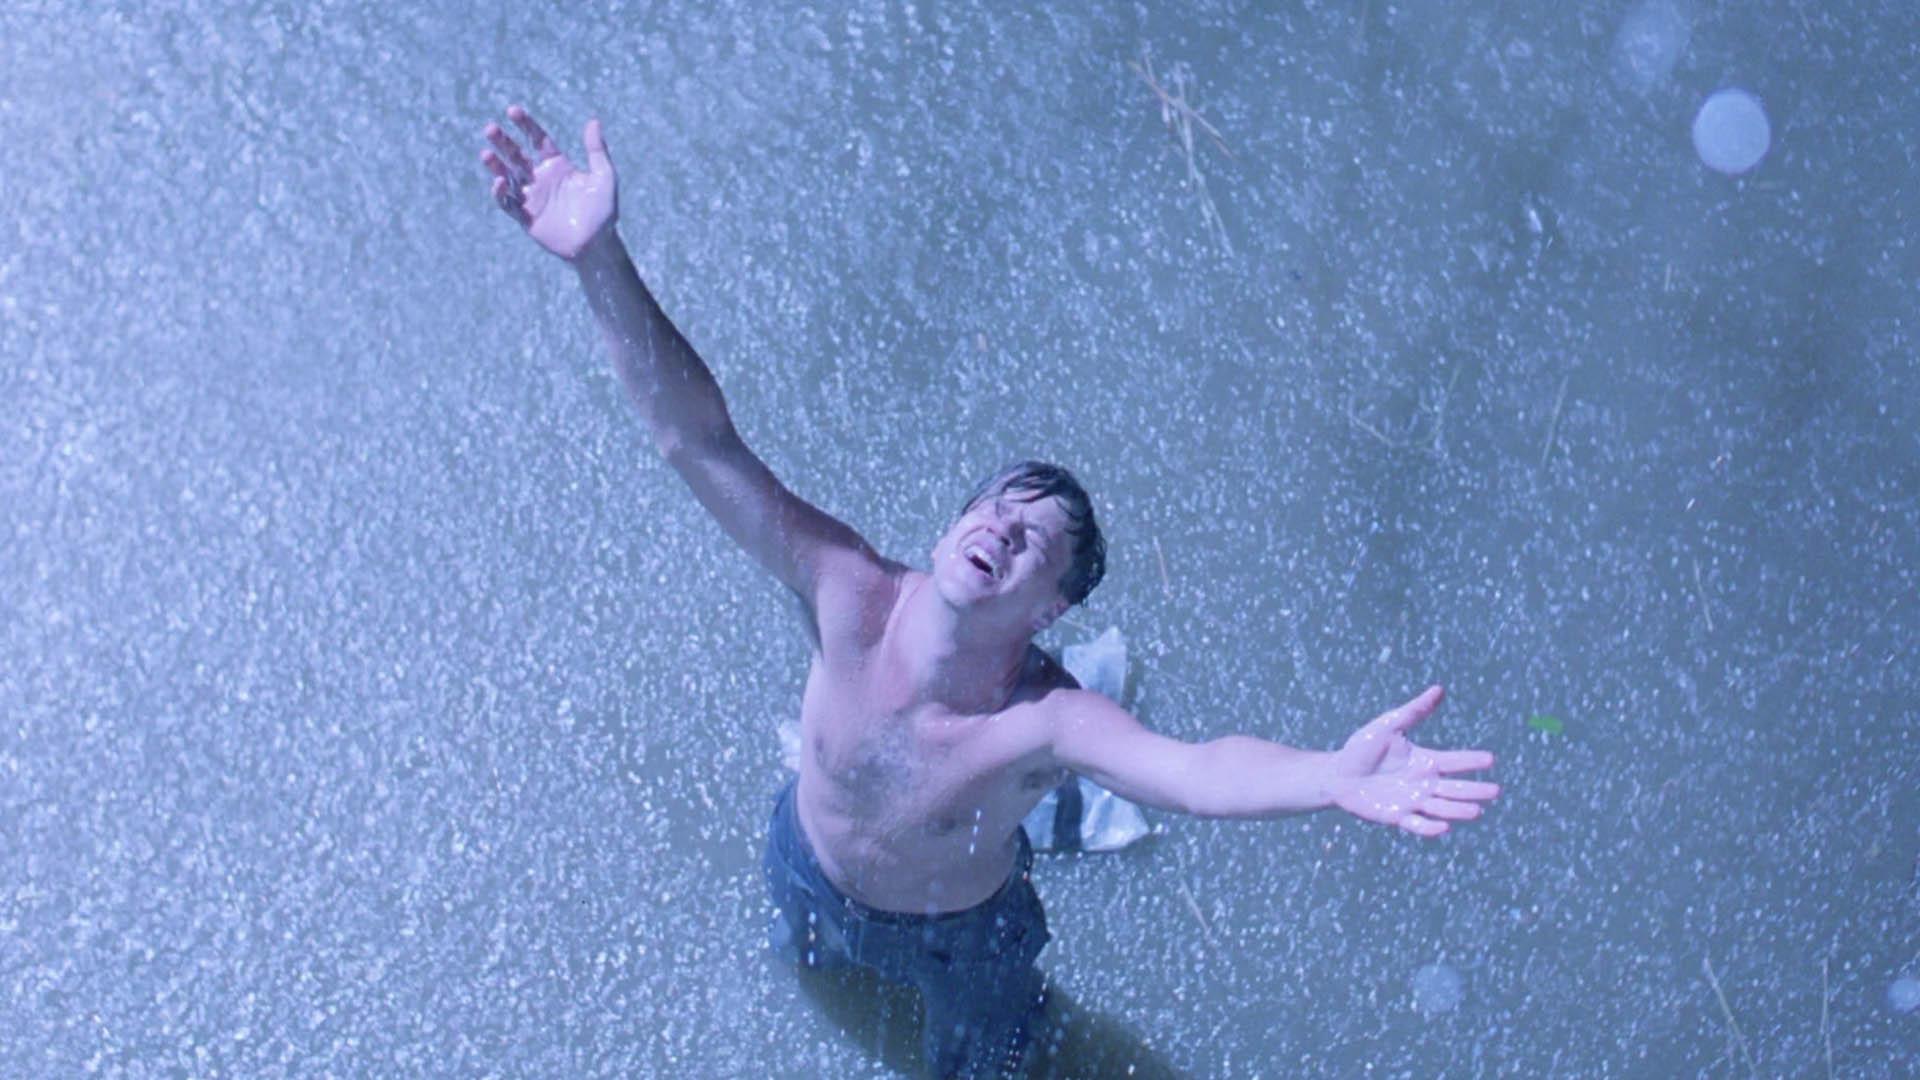 اندی دوفرین زیر بارش باران در فیلم The Shawshank Redemption